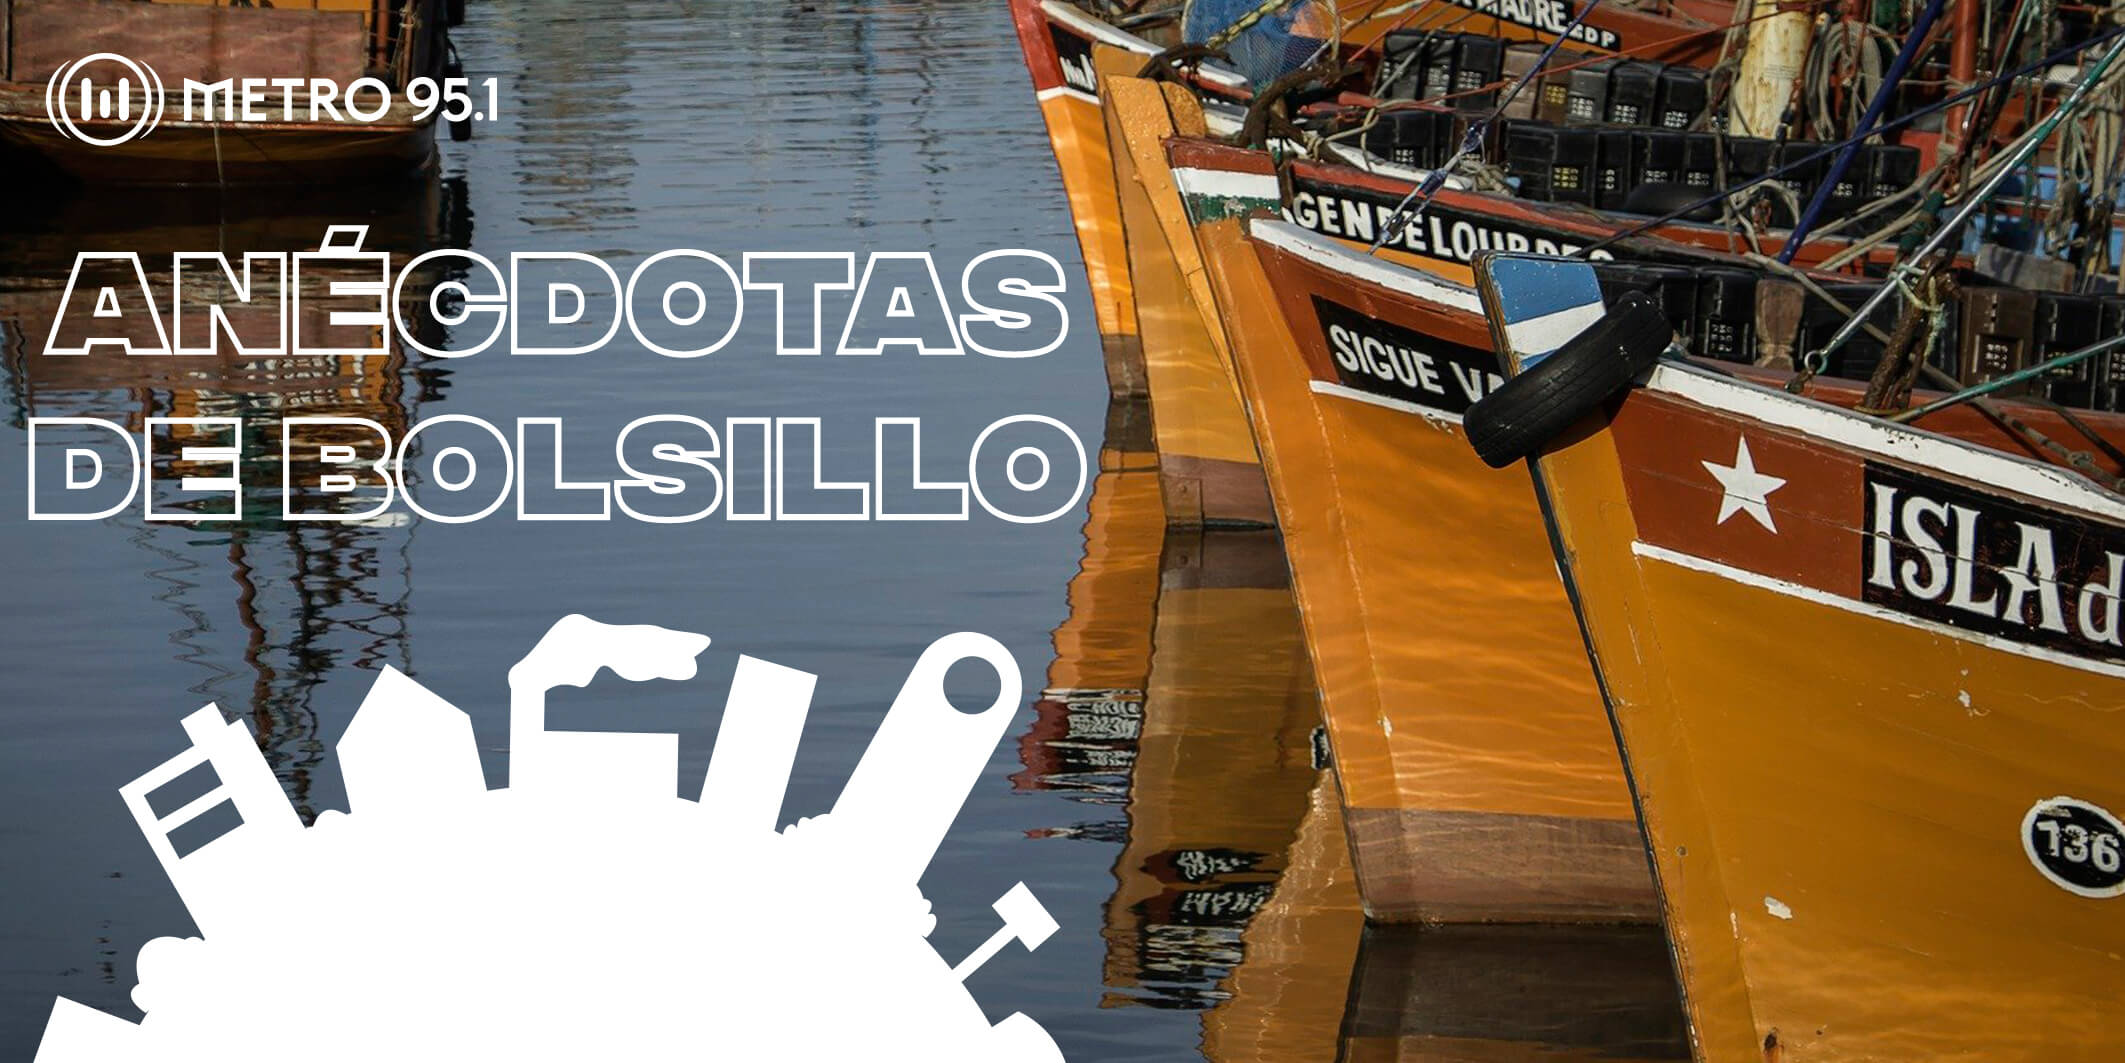 #AnecdotasDeBolsillo – Mar Del Plata